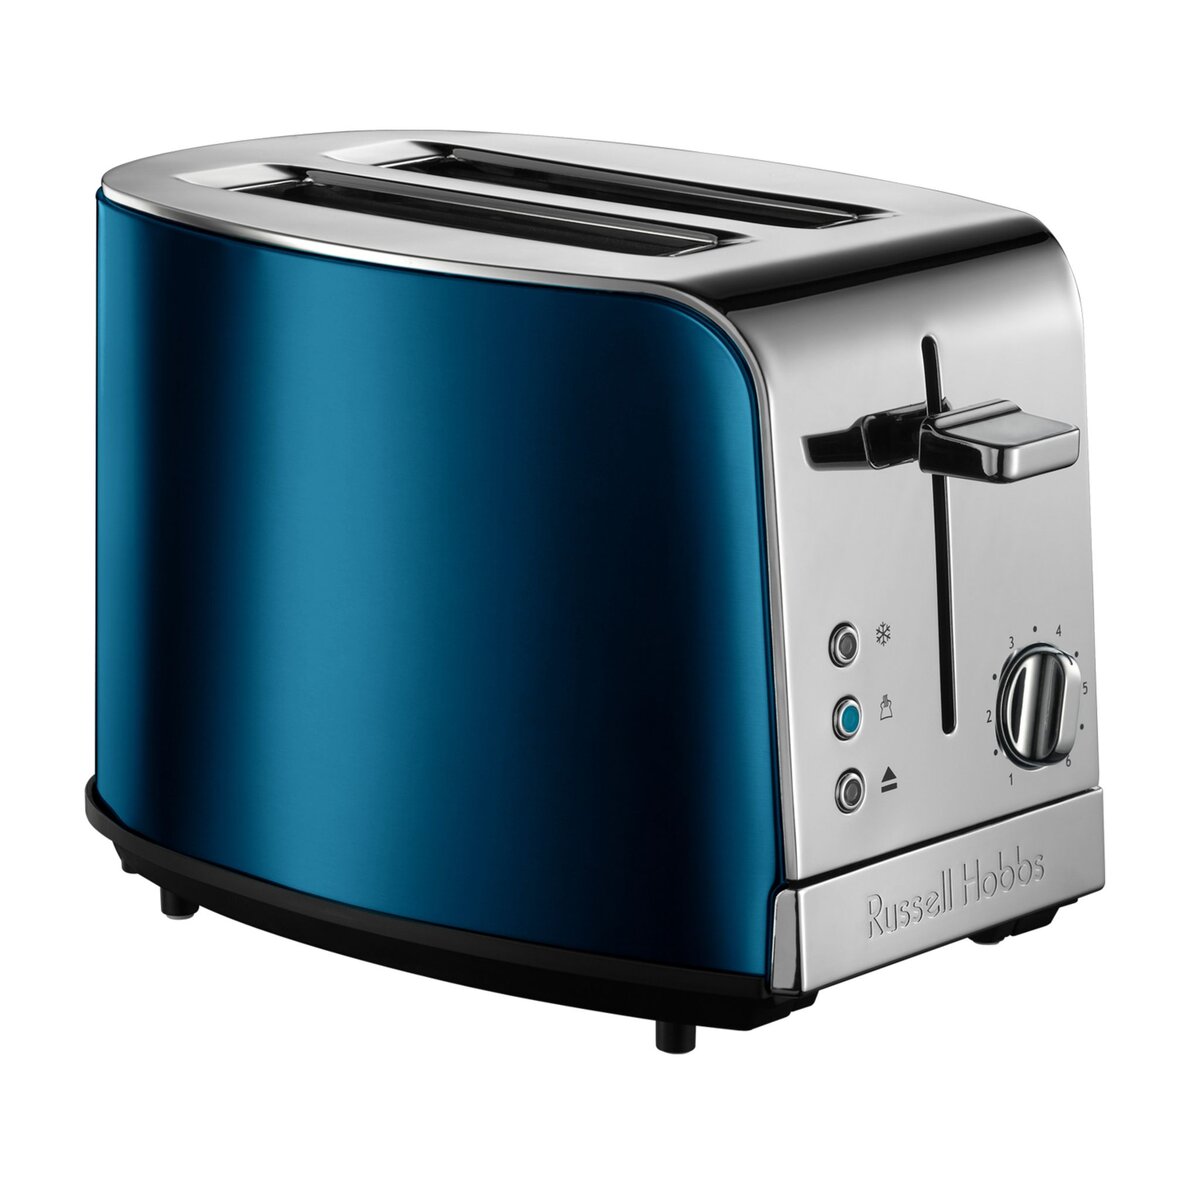 RUSSELLHOB Toaster 21780-56, Bleu